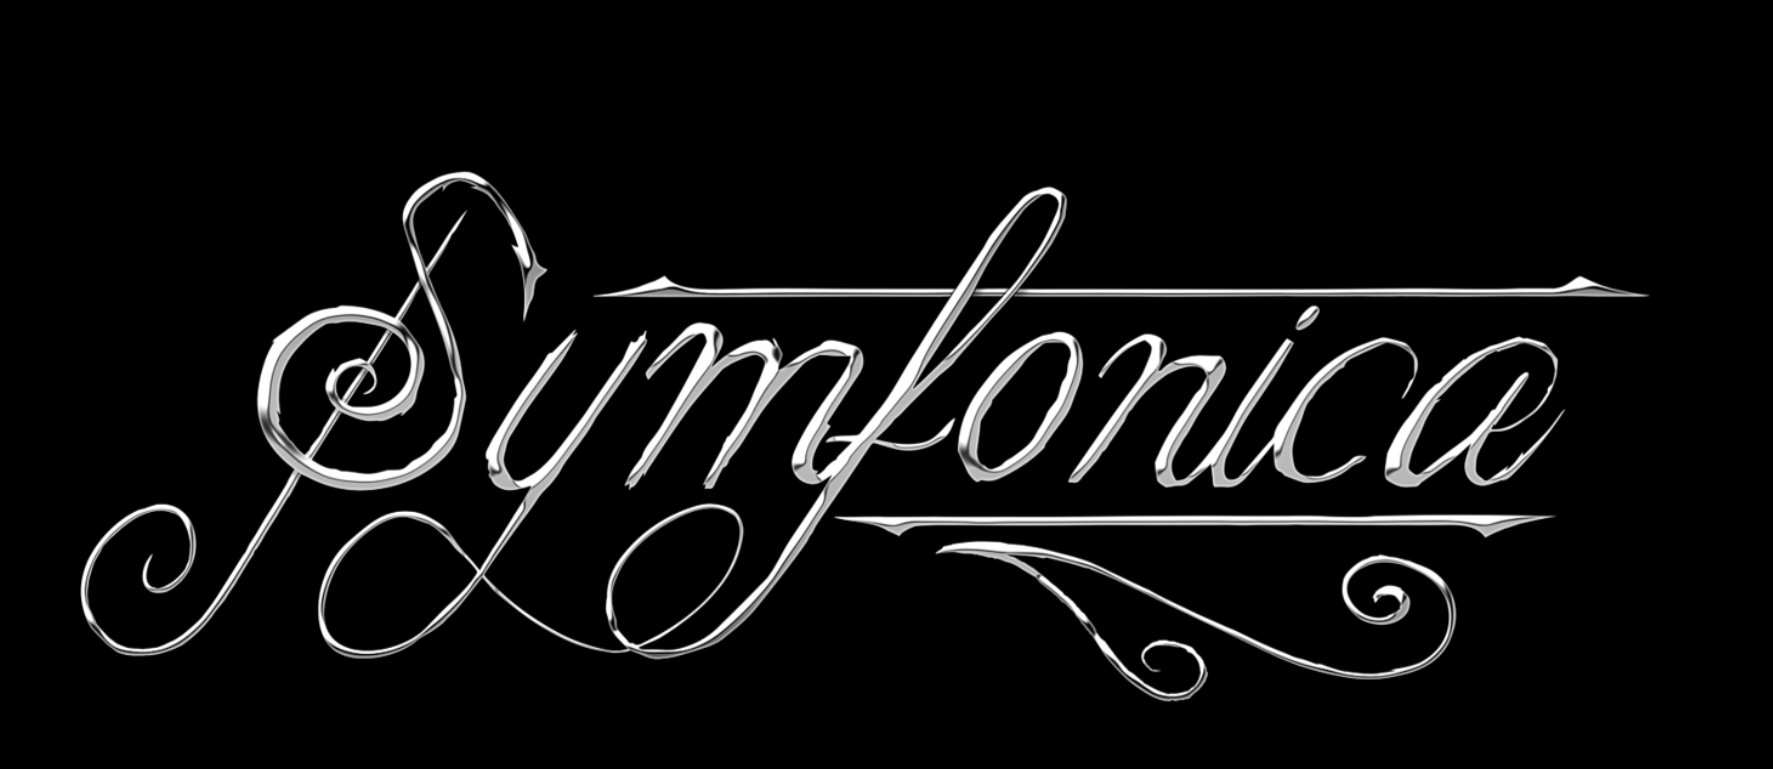 Logo for metalbandet symfonica